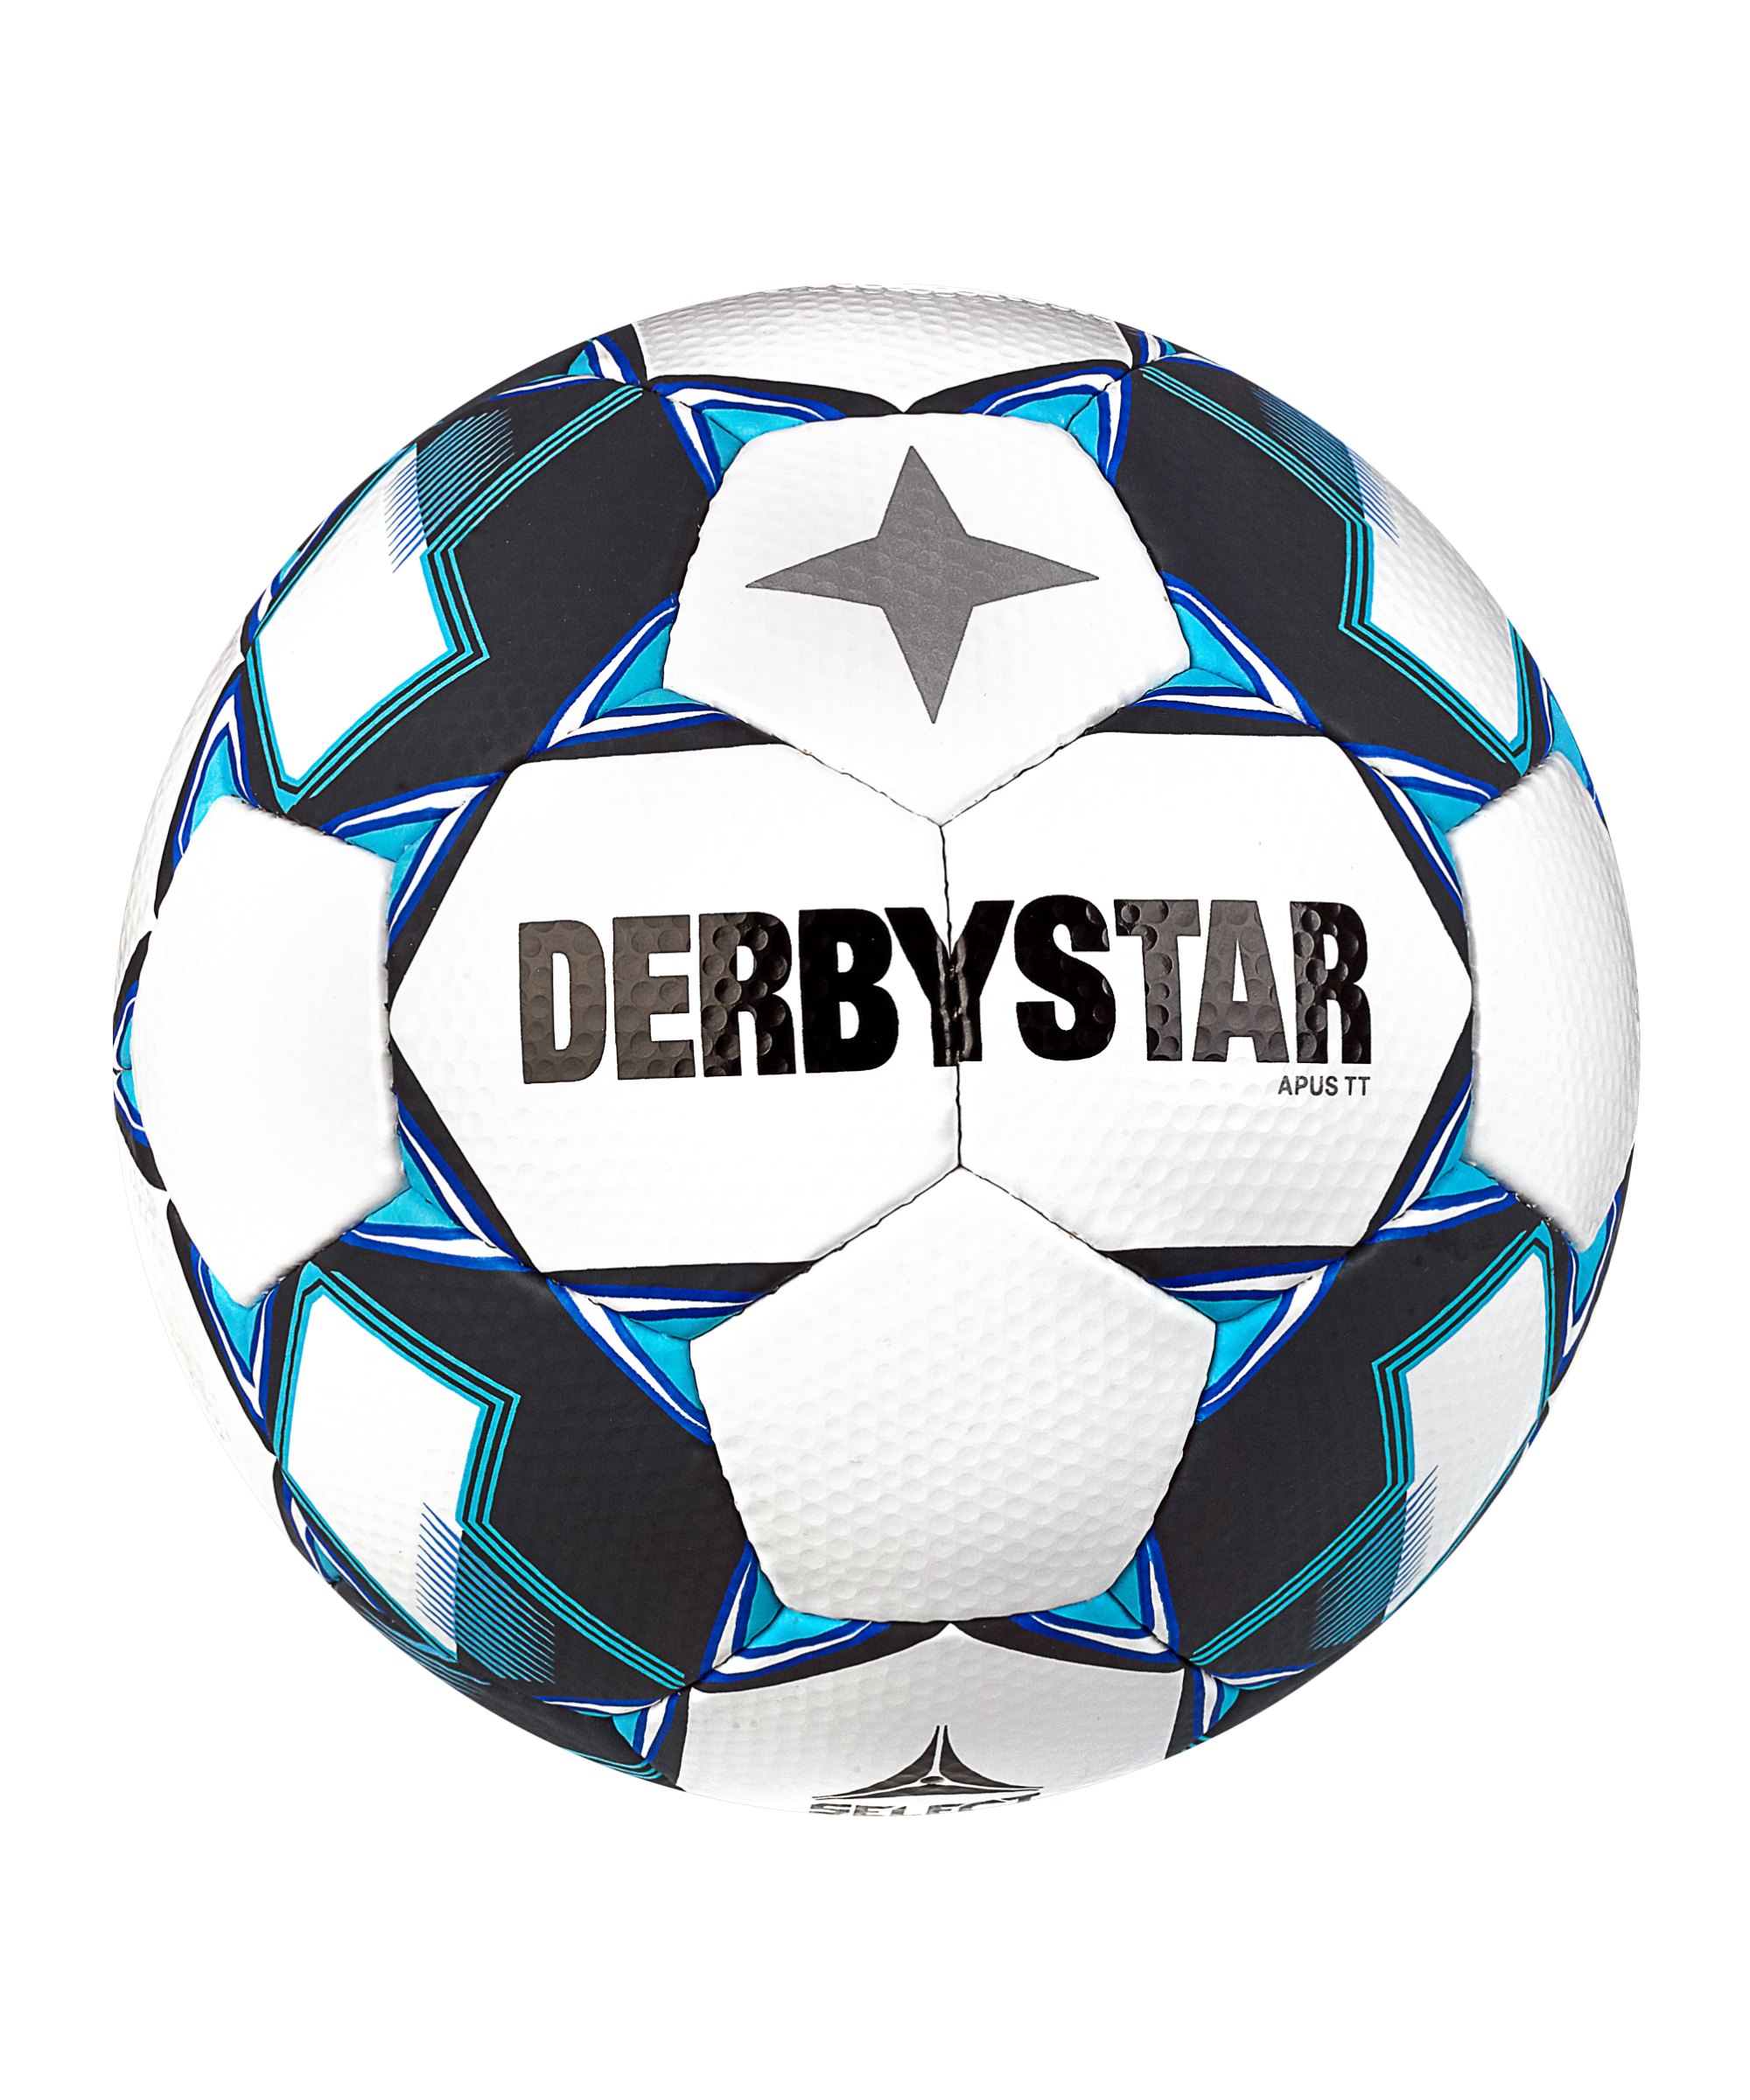 Derbystar Apus TT v23 Trainingsball Weiss Blau F160 - weiss